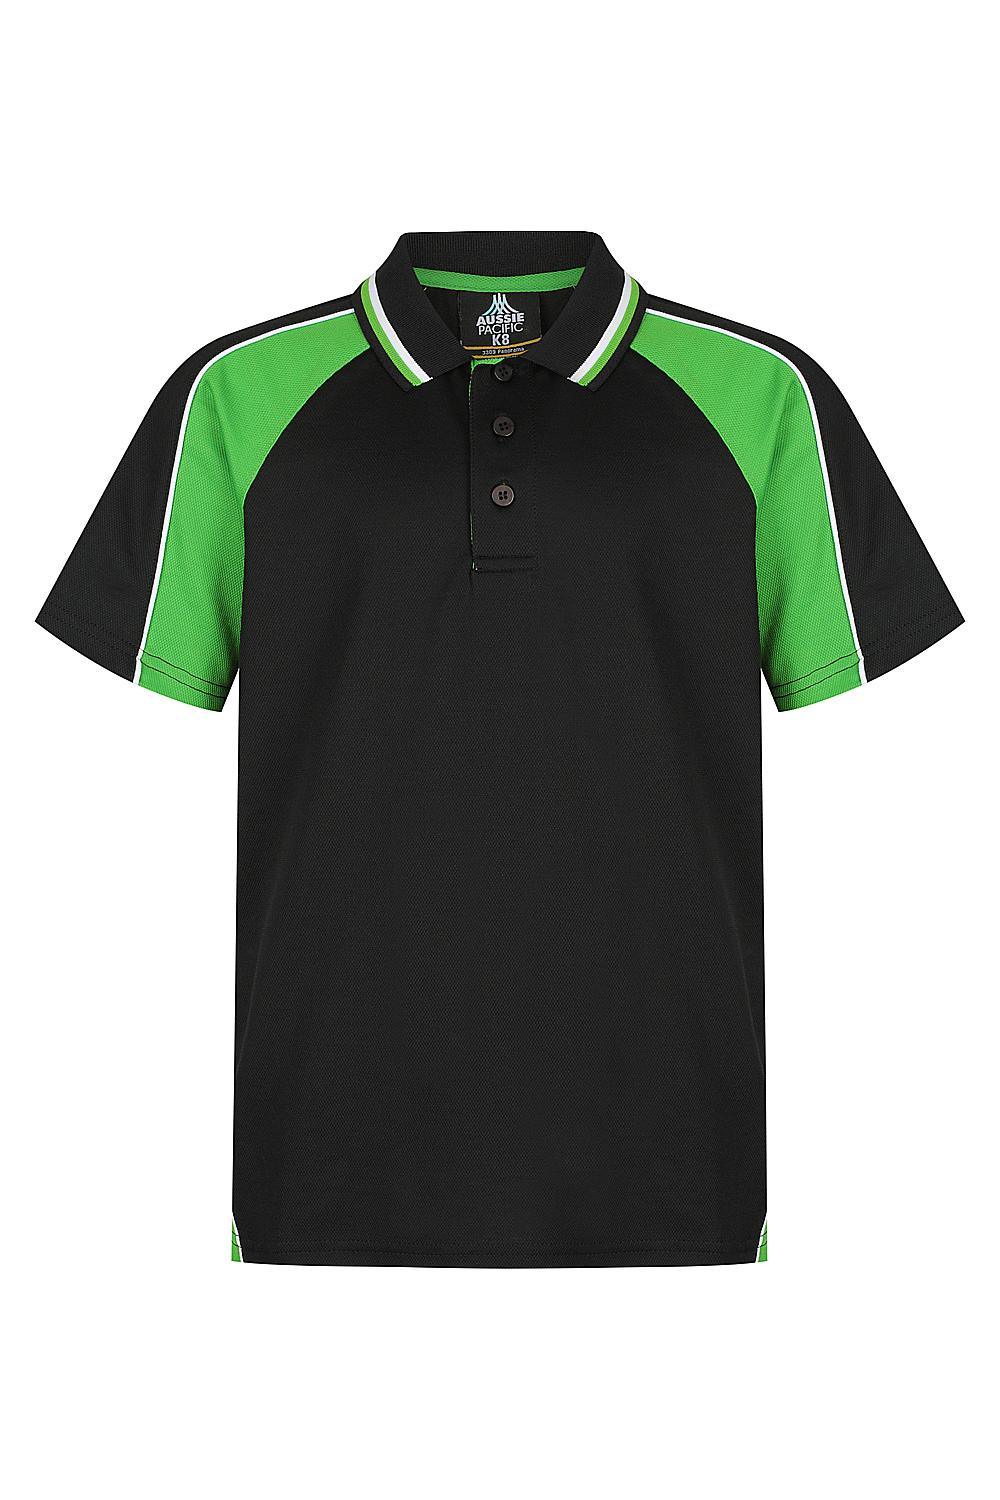 Custom Panorama Kids Shirt - Black/Green/White